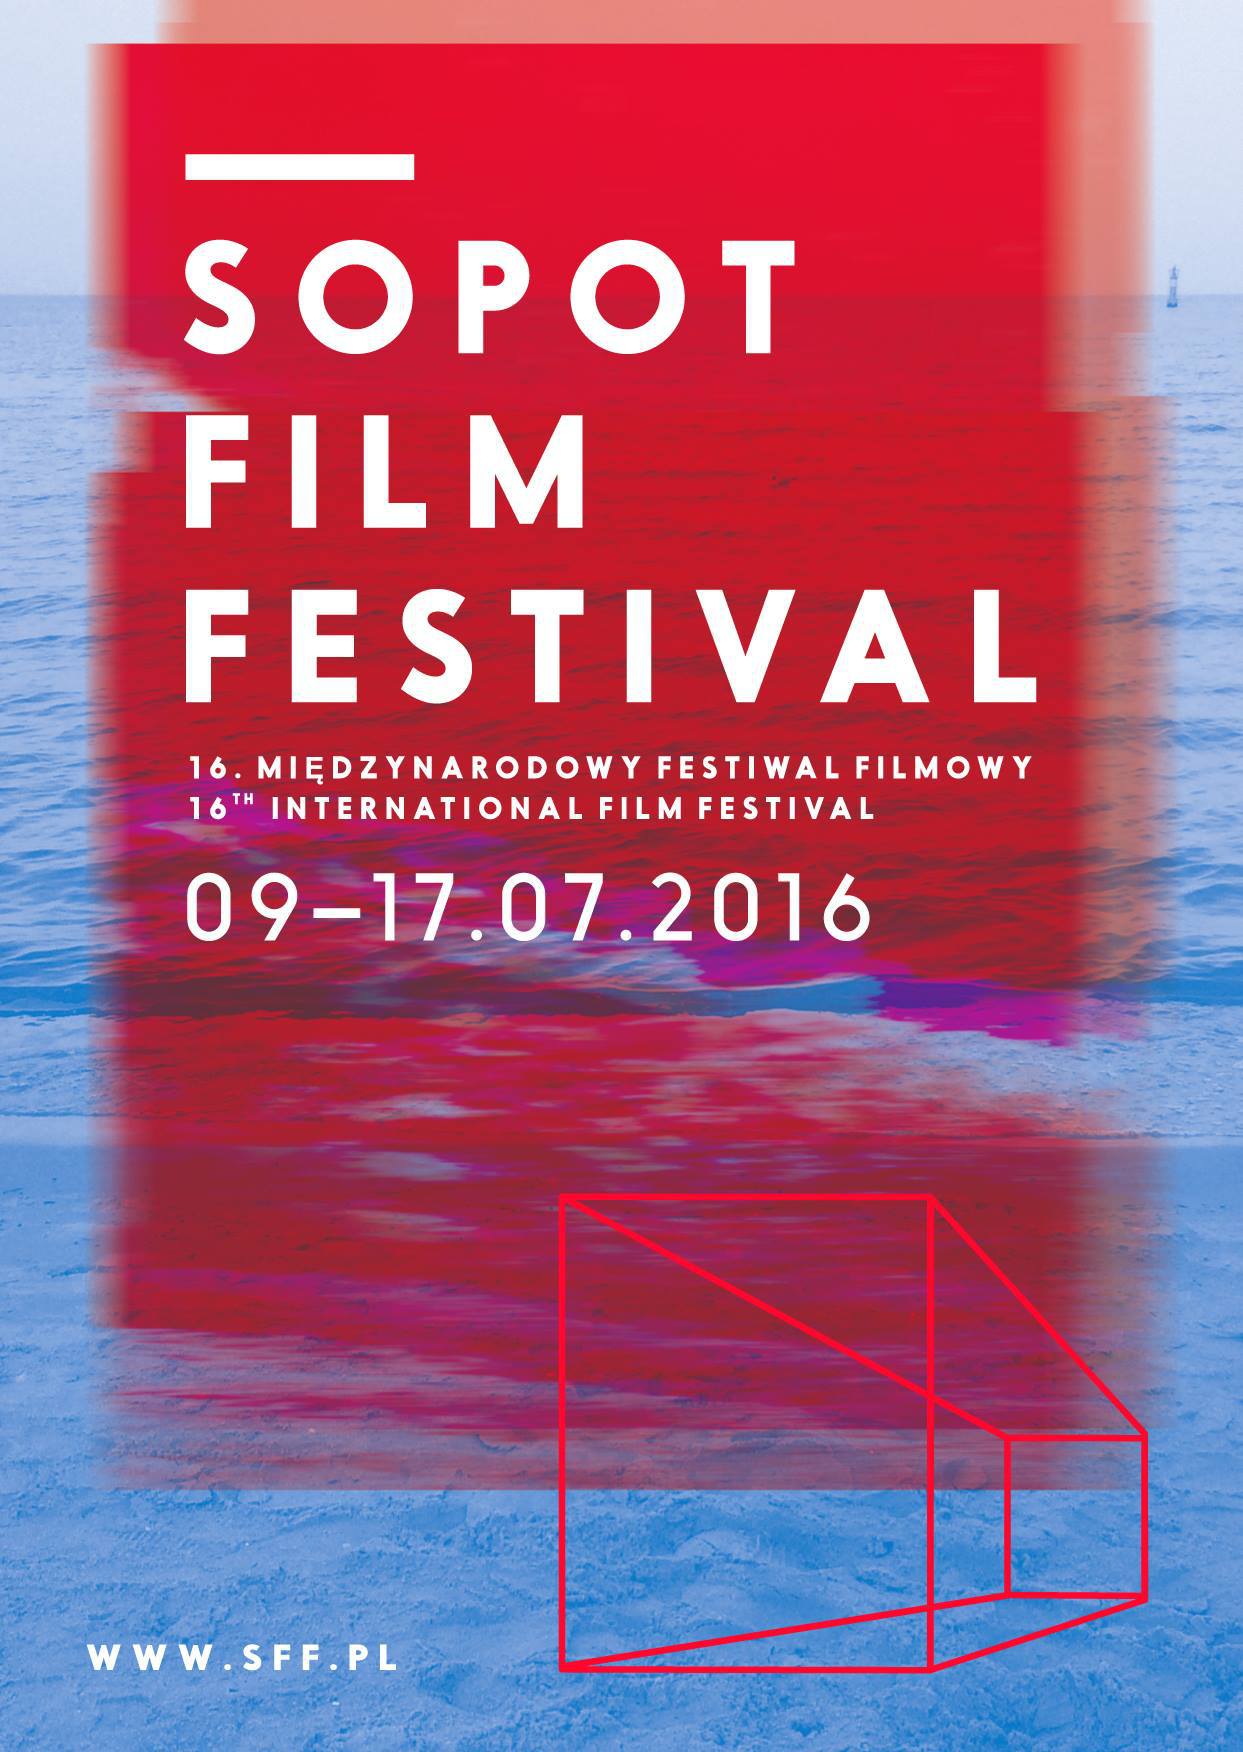 Sopot Film Festival 2016 – plakat (źródło: materiały prasowe)